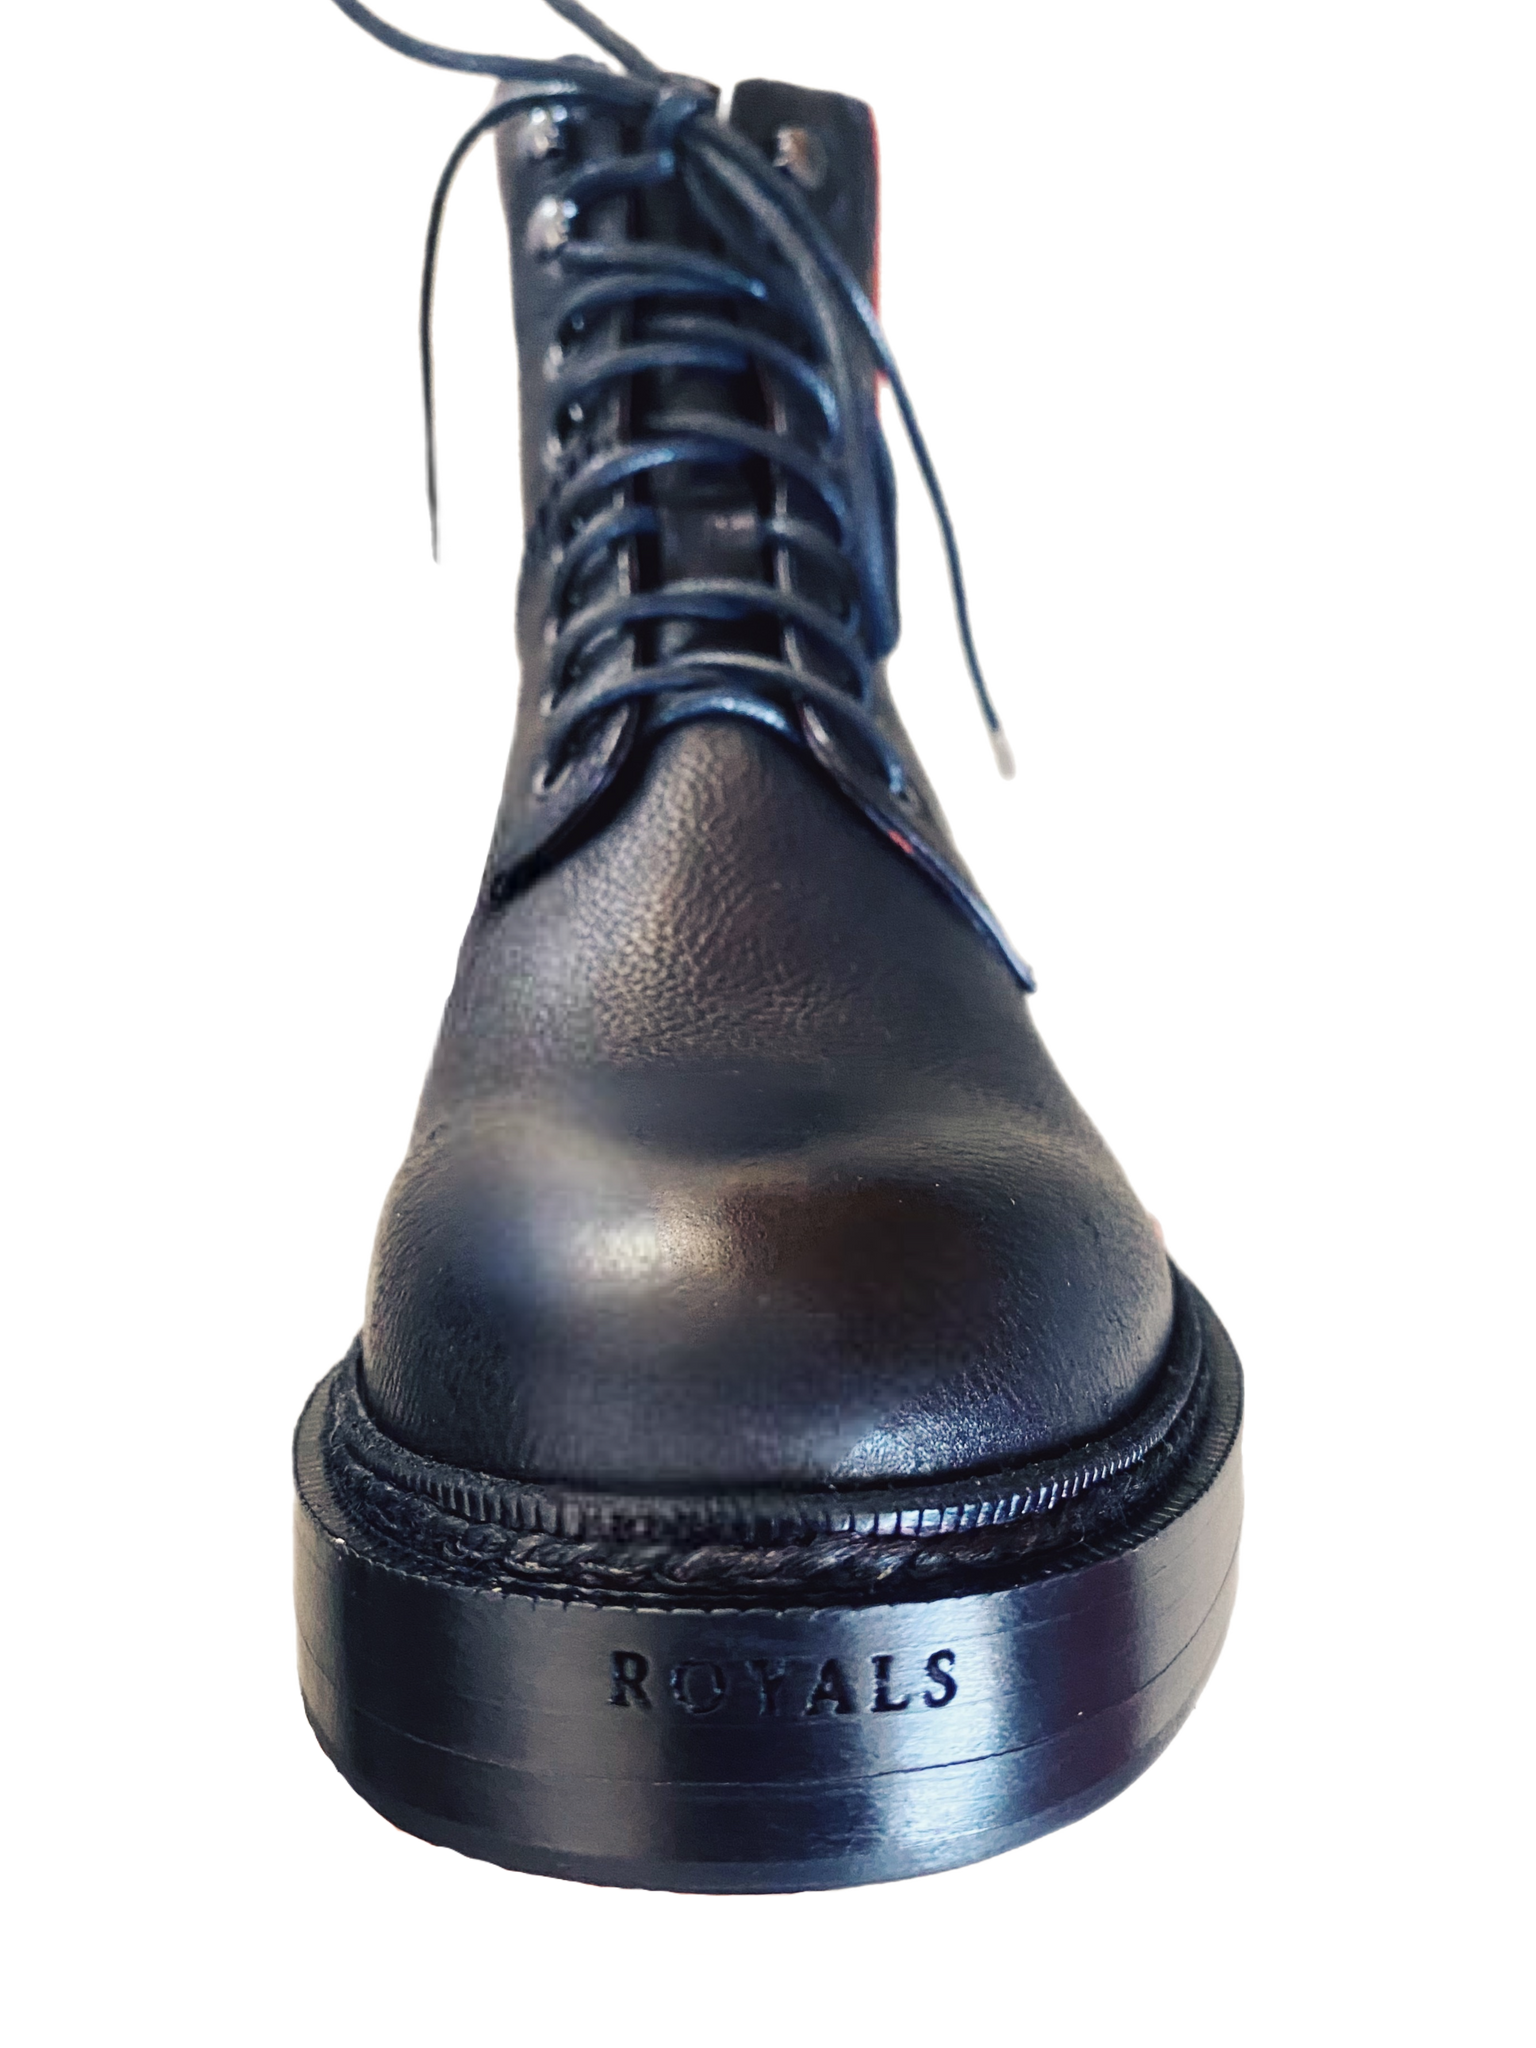 Original Royals Boots for Men